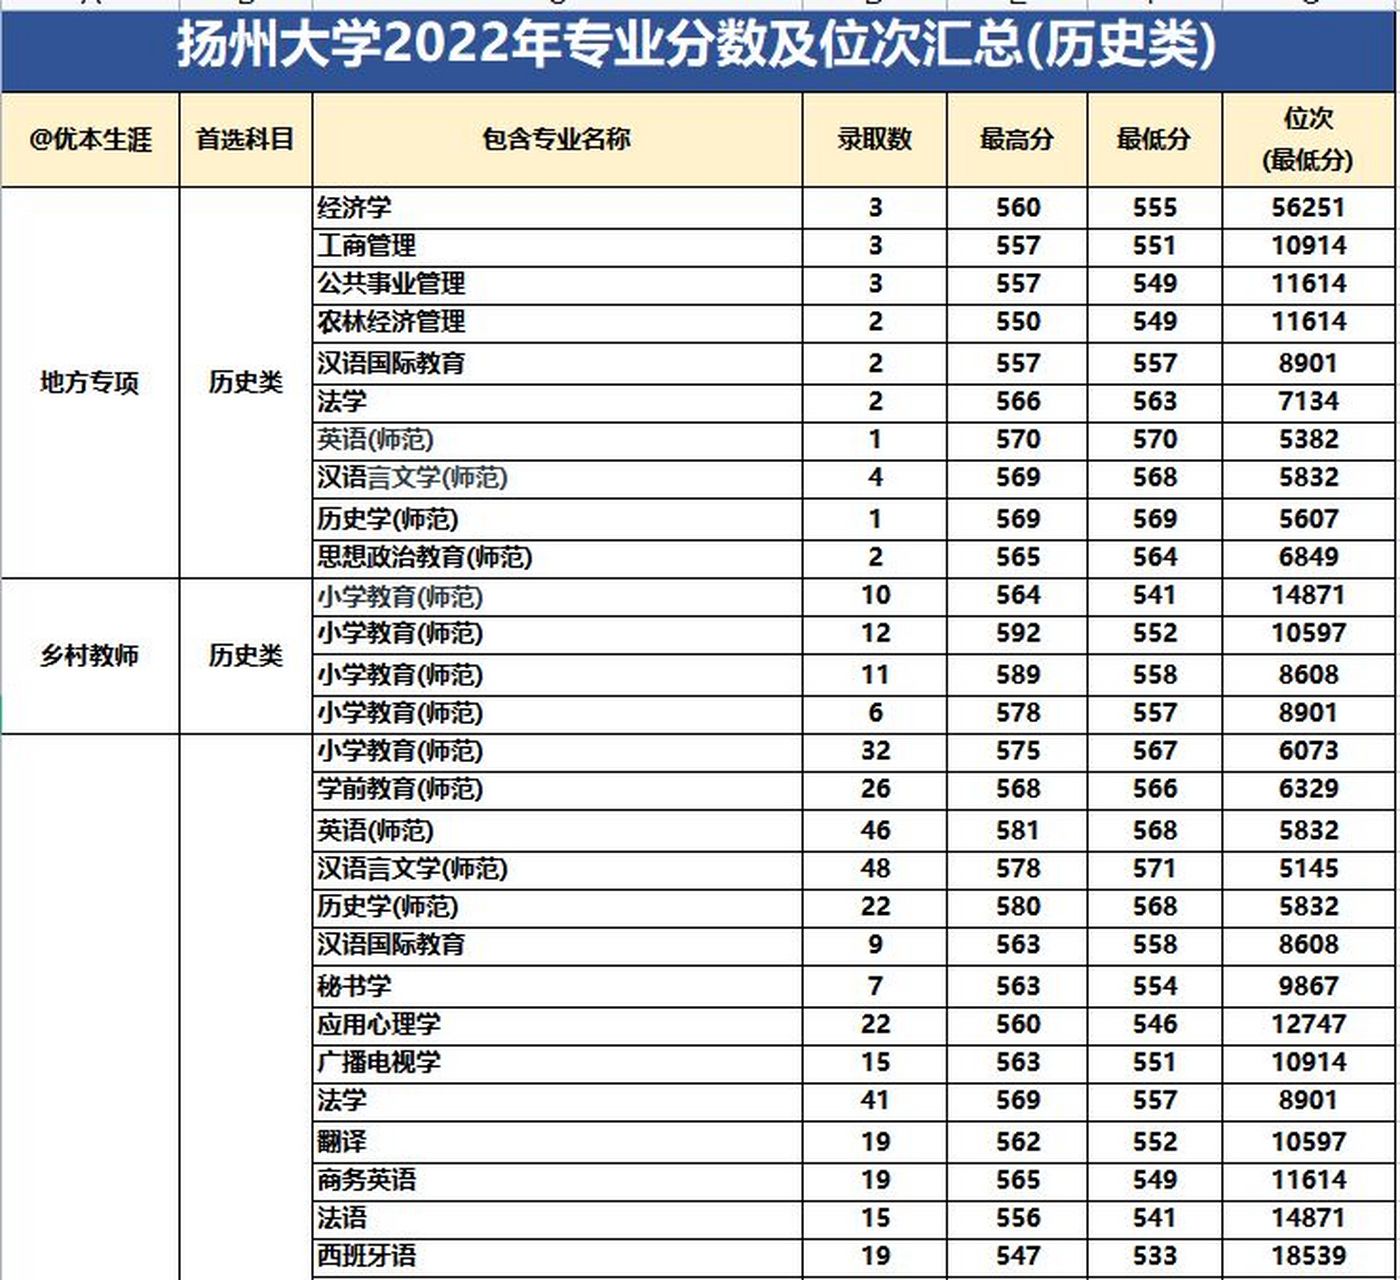 扬州大学2022年专业录取分数汇总 由于篇幅限制,图中的分数信息展示不